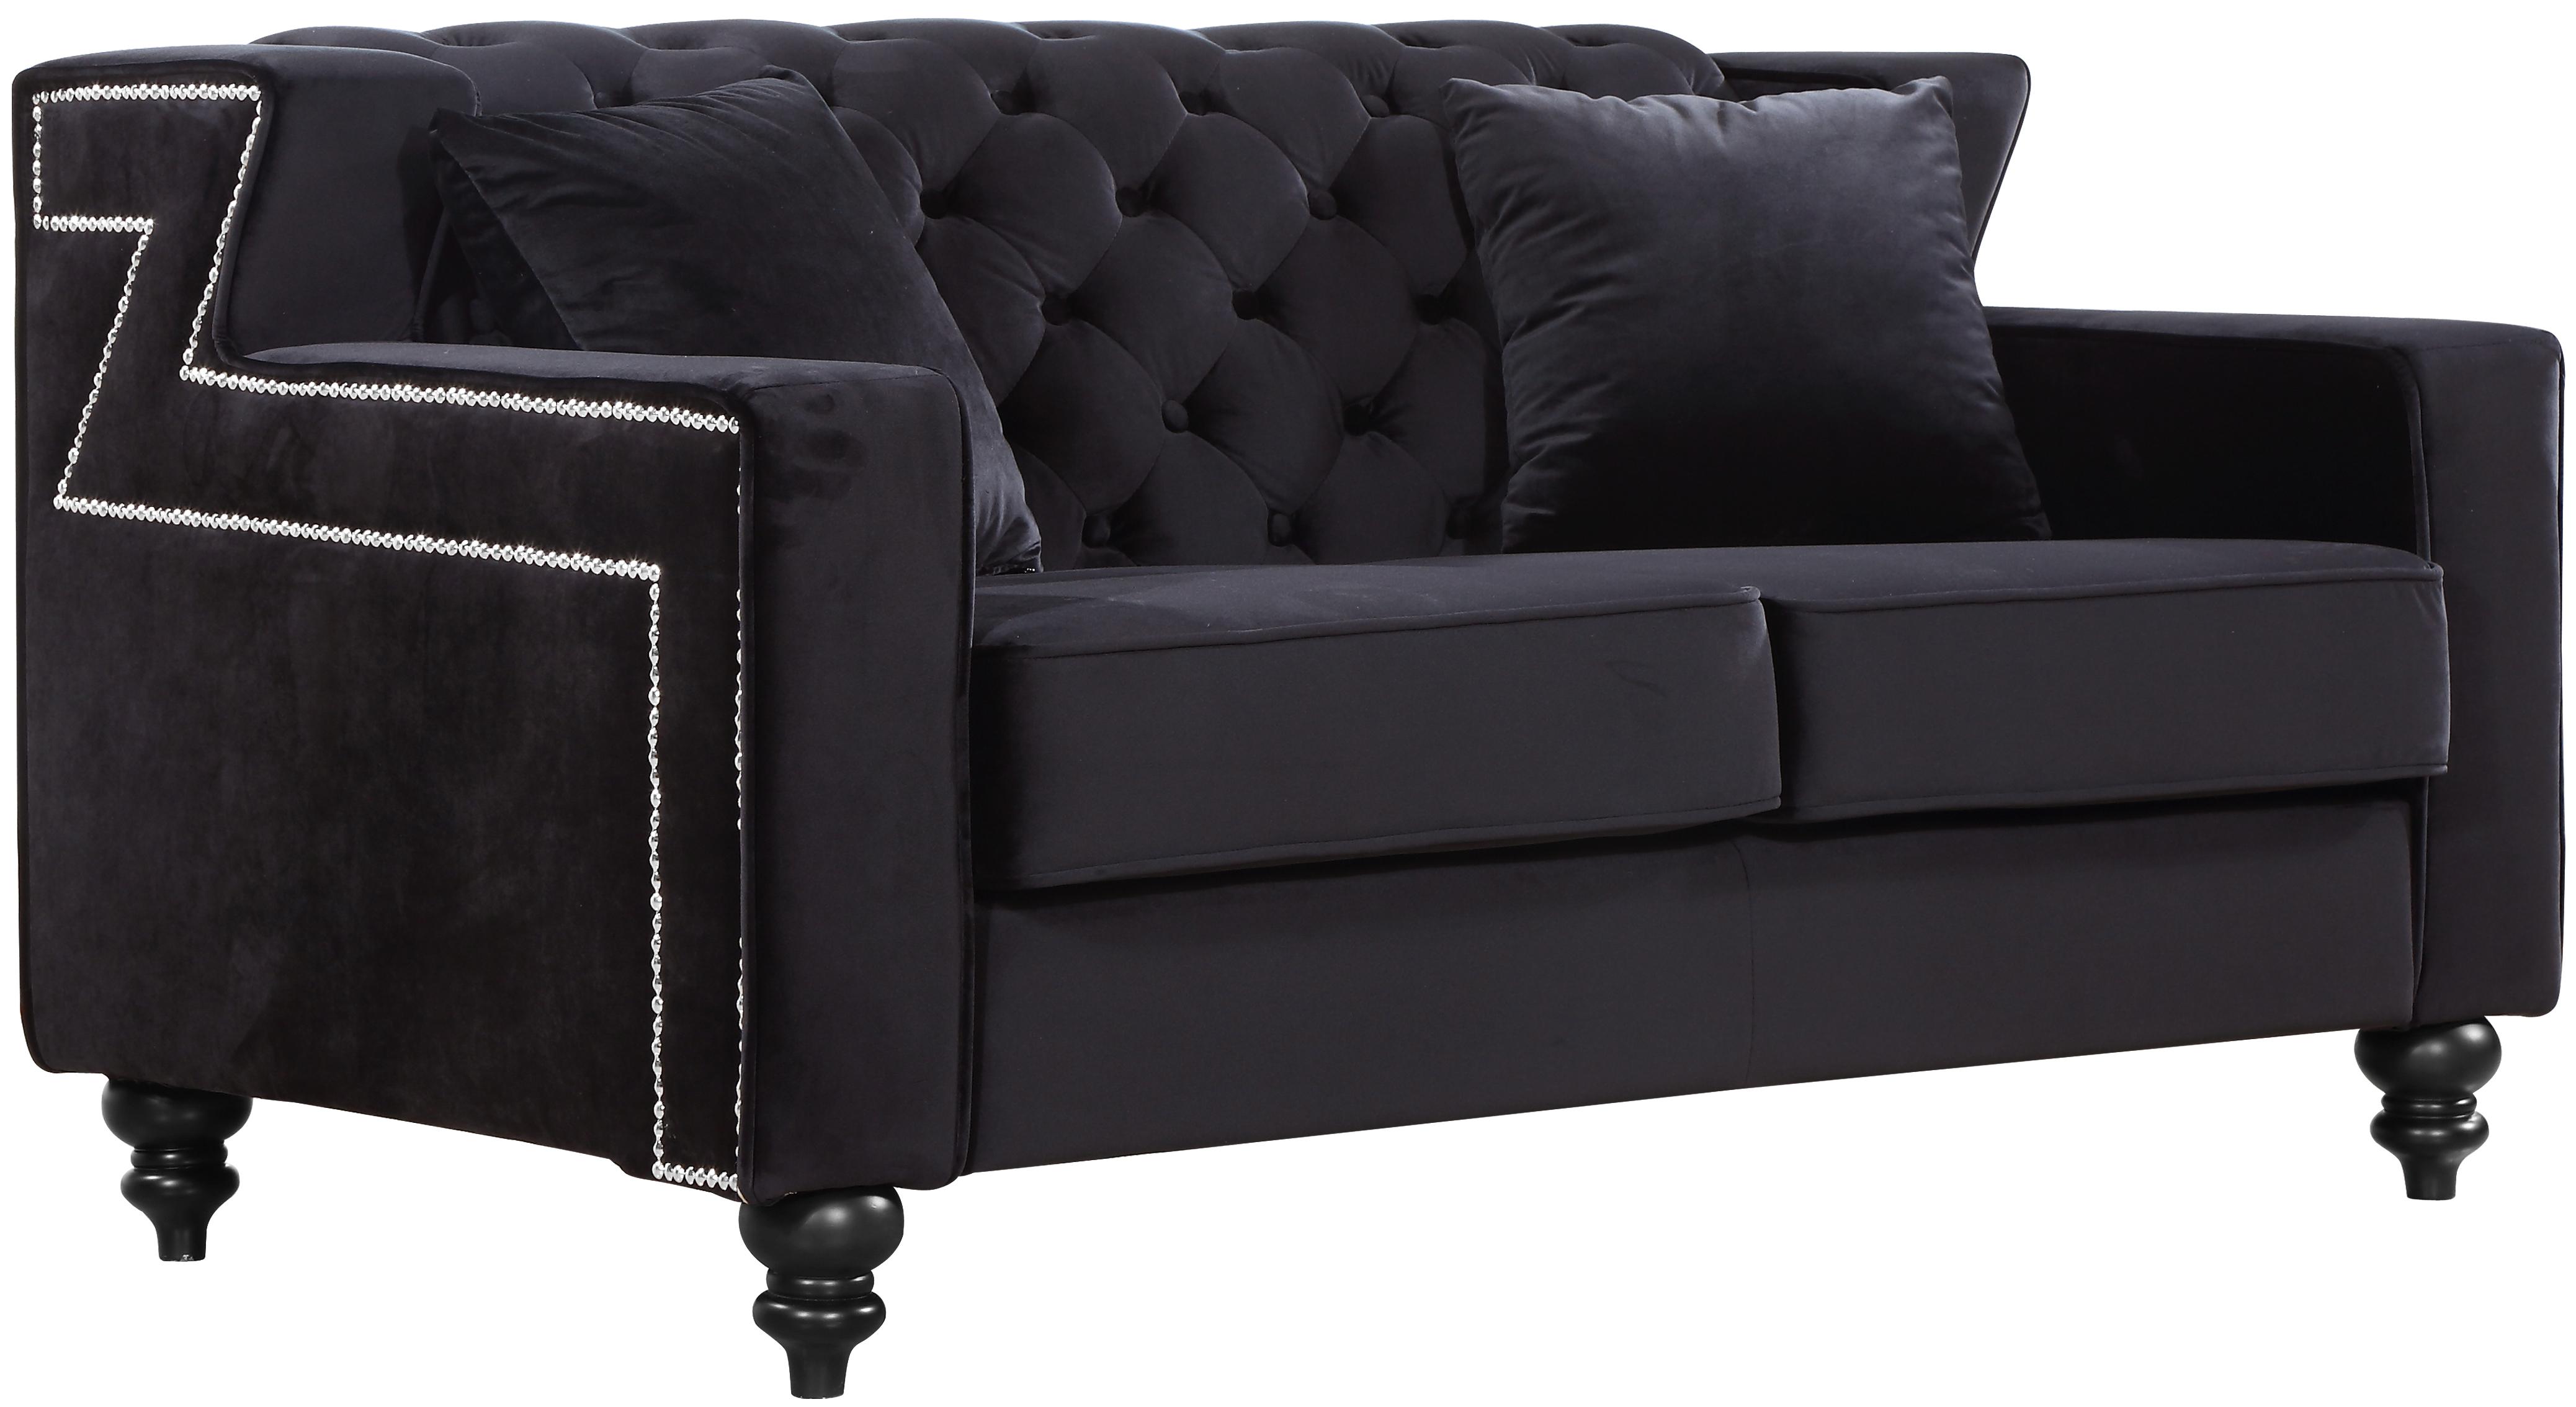 

    
616BL-Set-3 Meridian Furniture 616 Harley Black Velvet Tufted Sofa Loveseat & Chair Set 3Pcs
